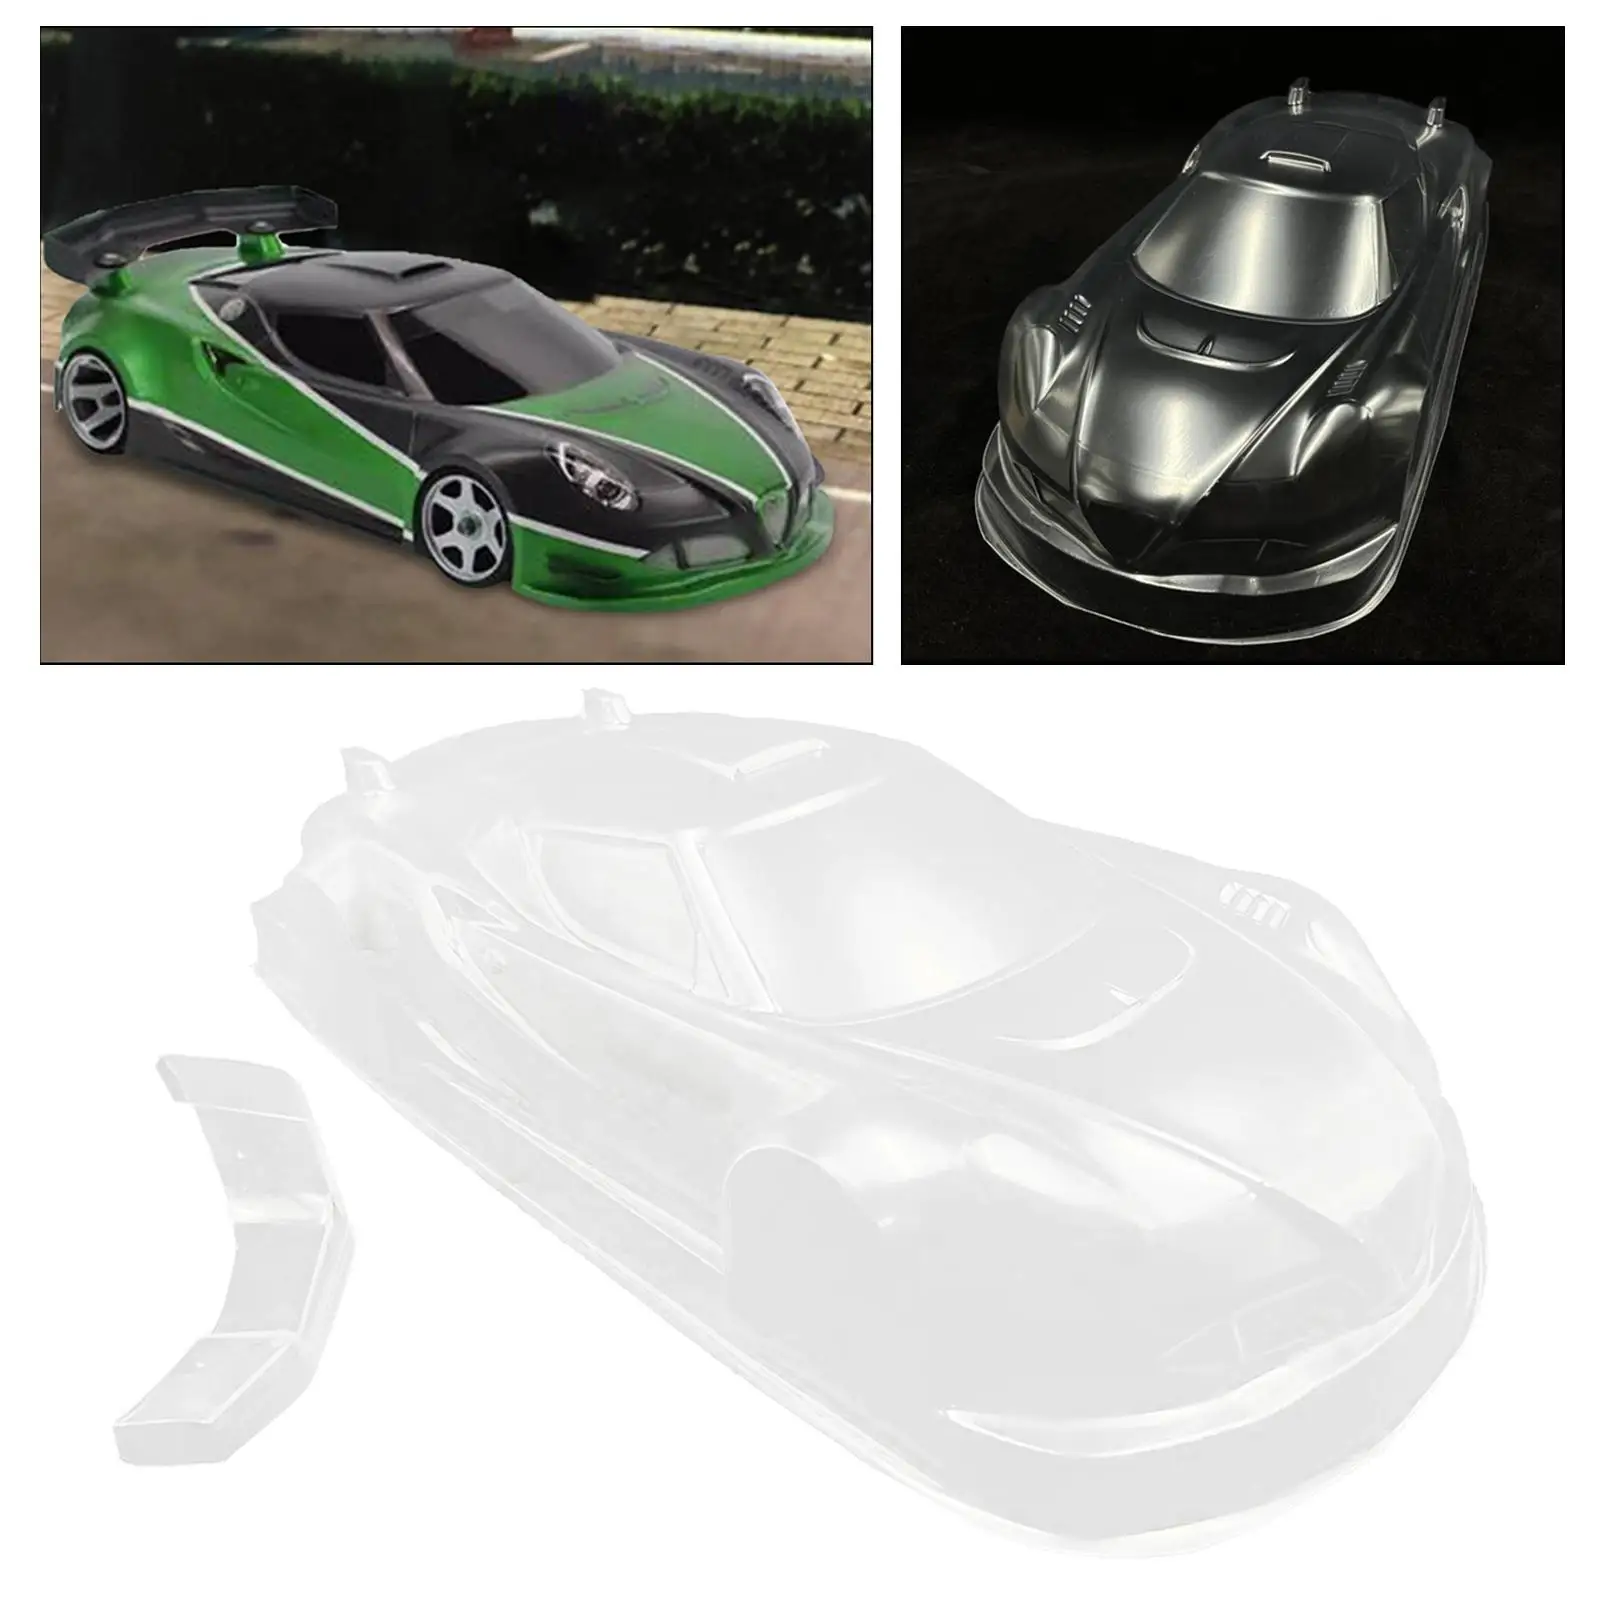 RC Drifting Touring Car Body Shell DIY RC Car PC Body Масштаб 1:12 для RC Гусеничного Грузовика Обновление Аксессуаров Замена Запасных Частей